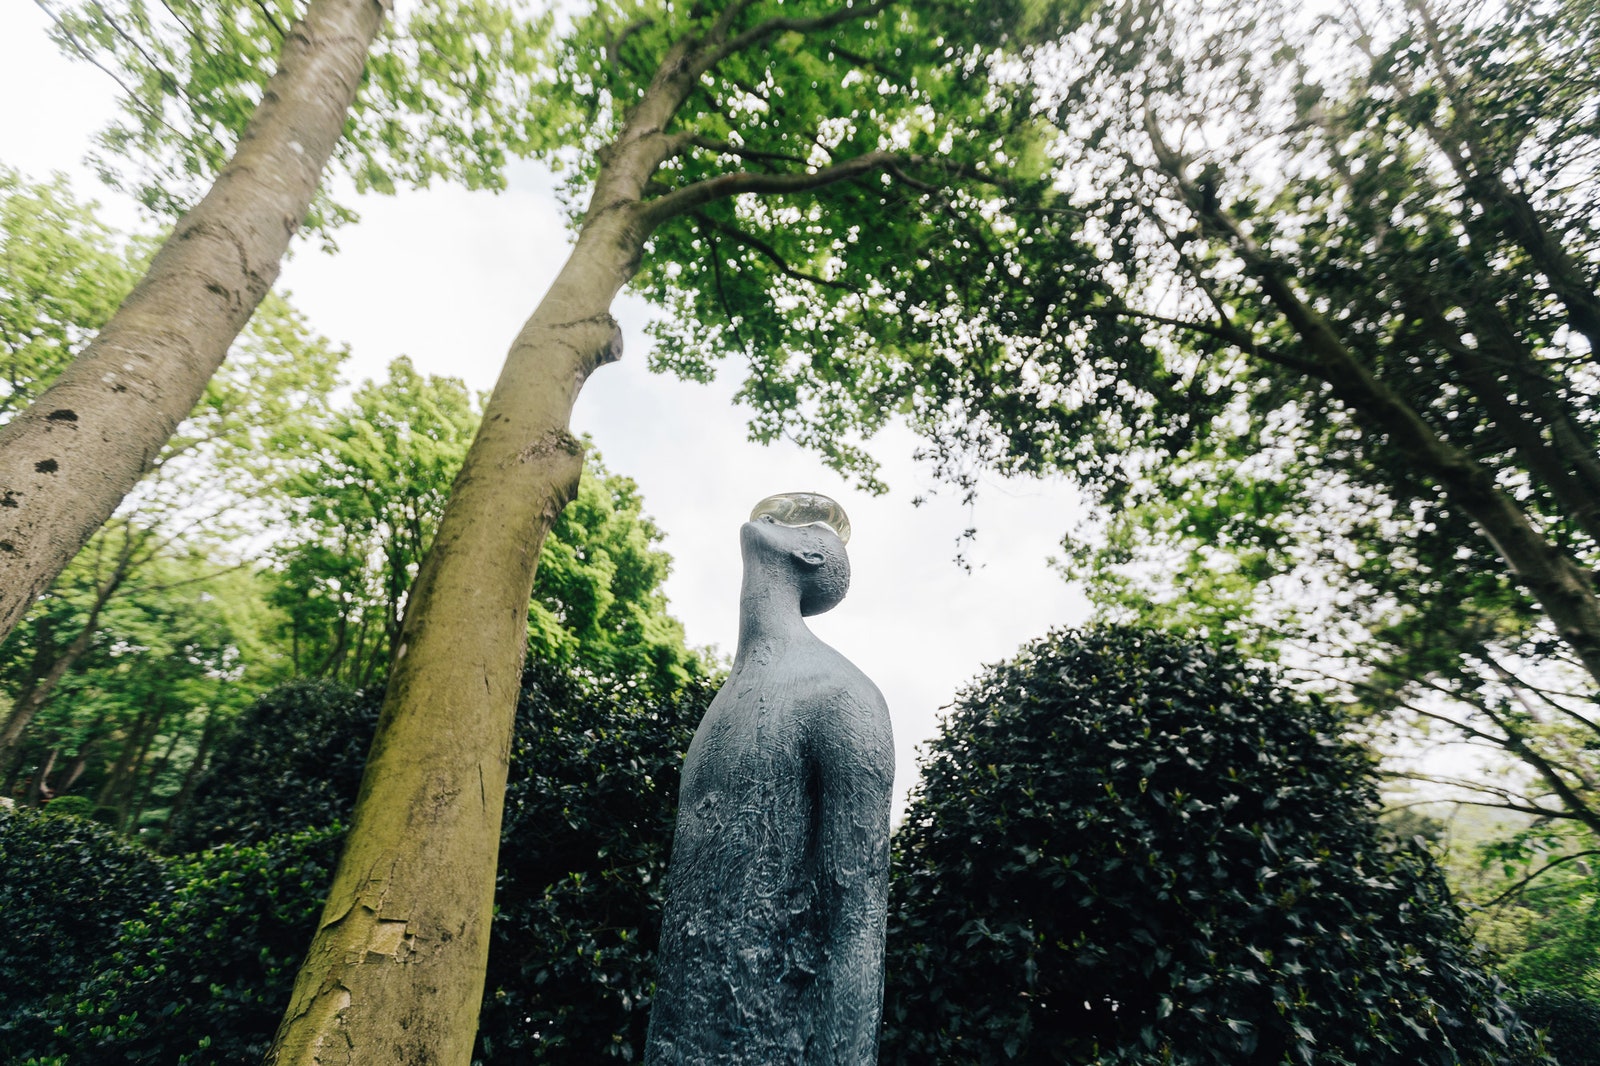 Скульптура украинца Назара Билюка “Дождь” посвящена внутреннему диалогу человека с самим собой его поискам смысла и...